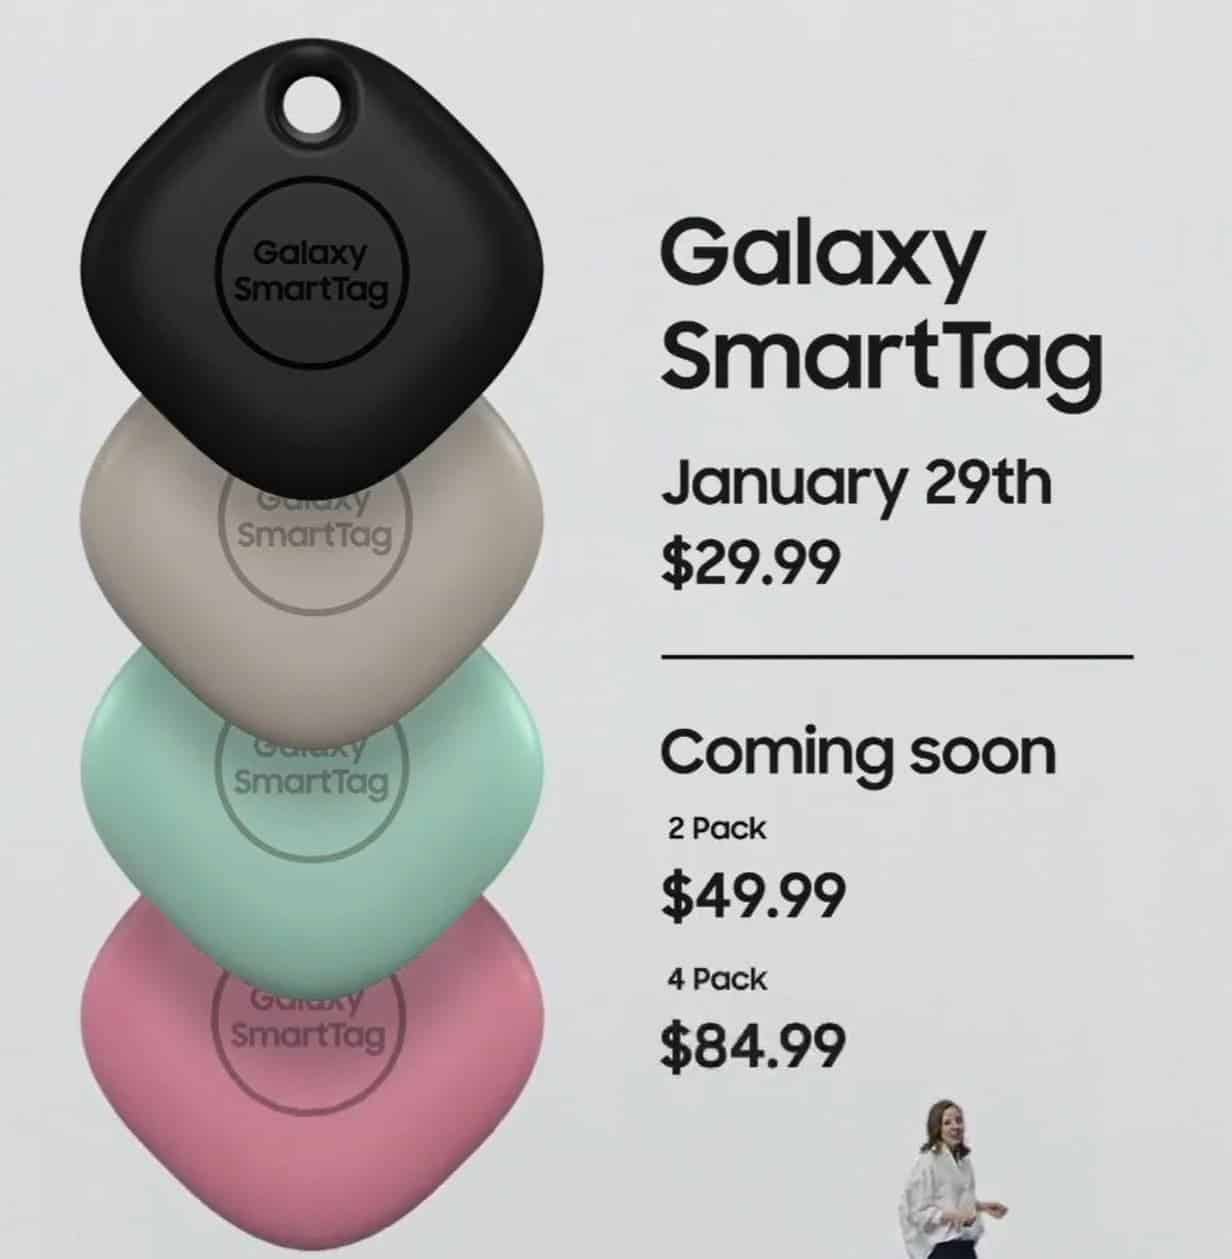 Samsung Galaxy SmartTag & SmartTag Plus Announced 